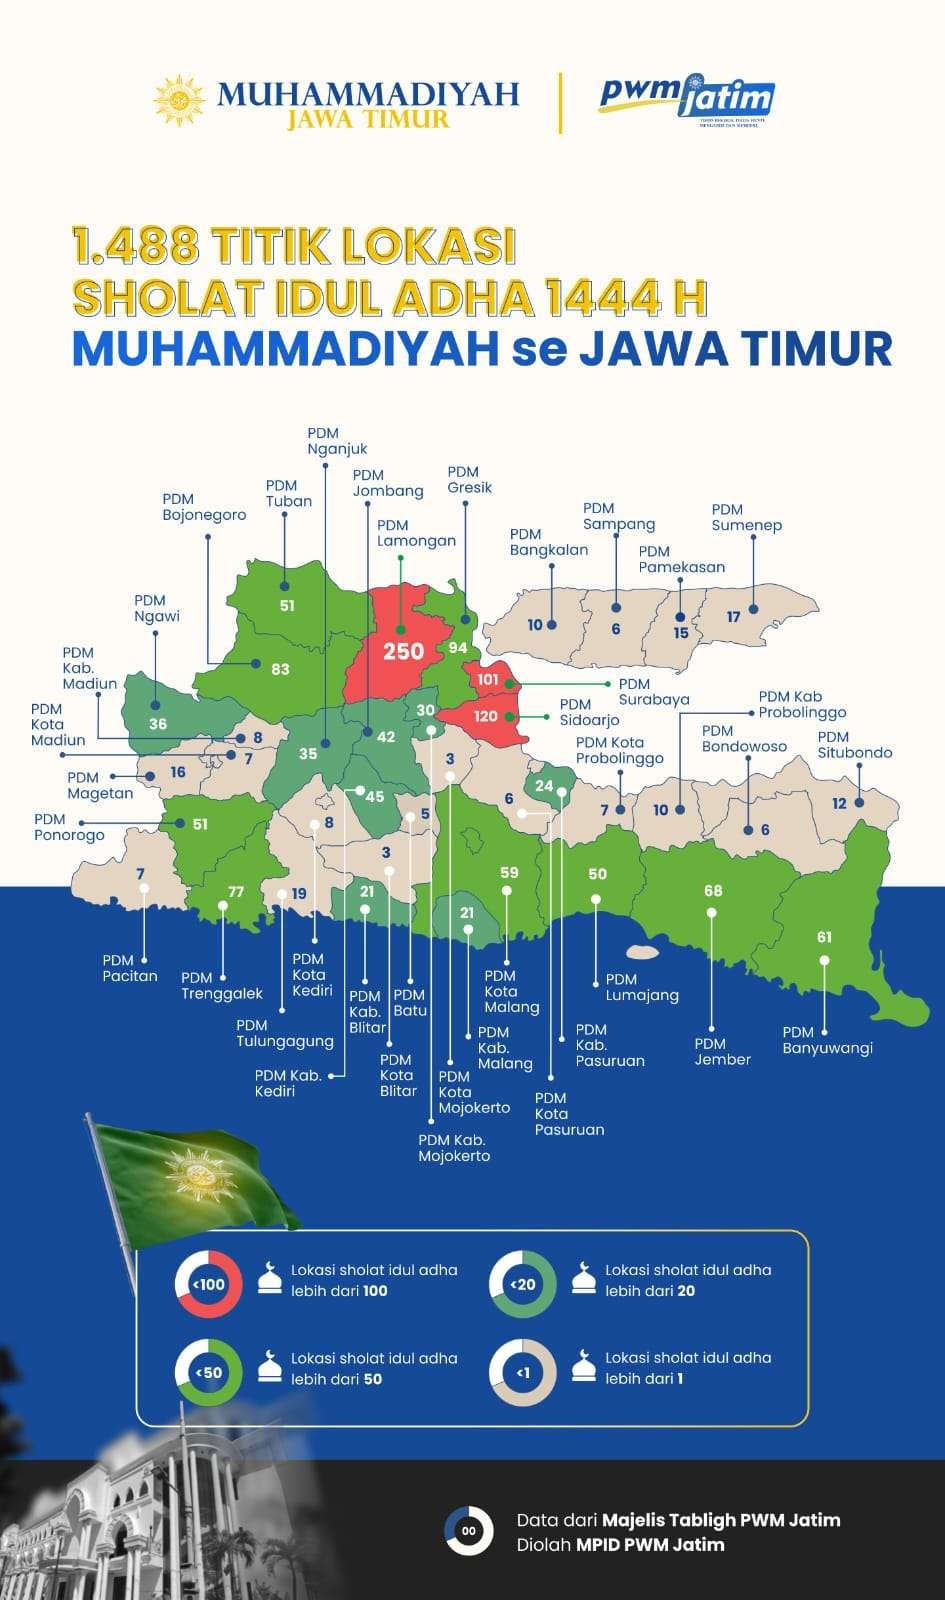 Pelaksanaan Sholat Idul Adha warga Muhammadiyah Jawa Timur pada Rabu 28 Juni 2023. (Foto: dok. pwm Jatim)